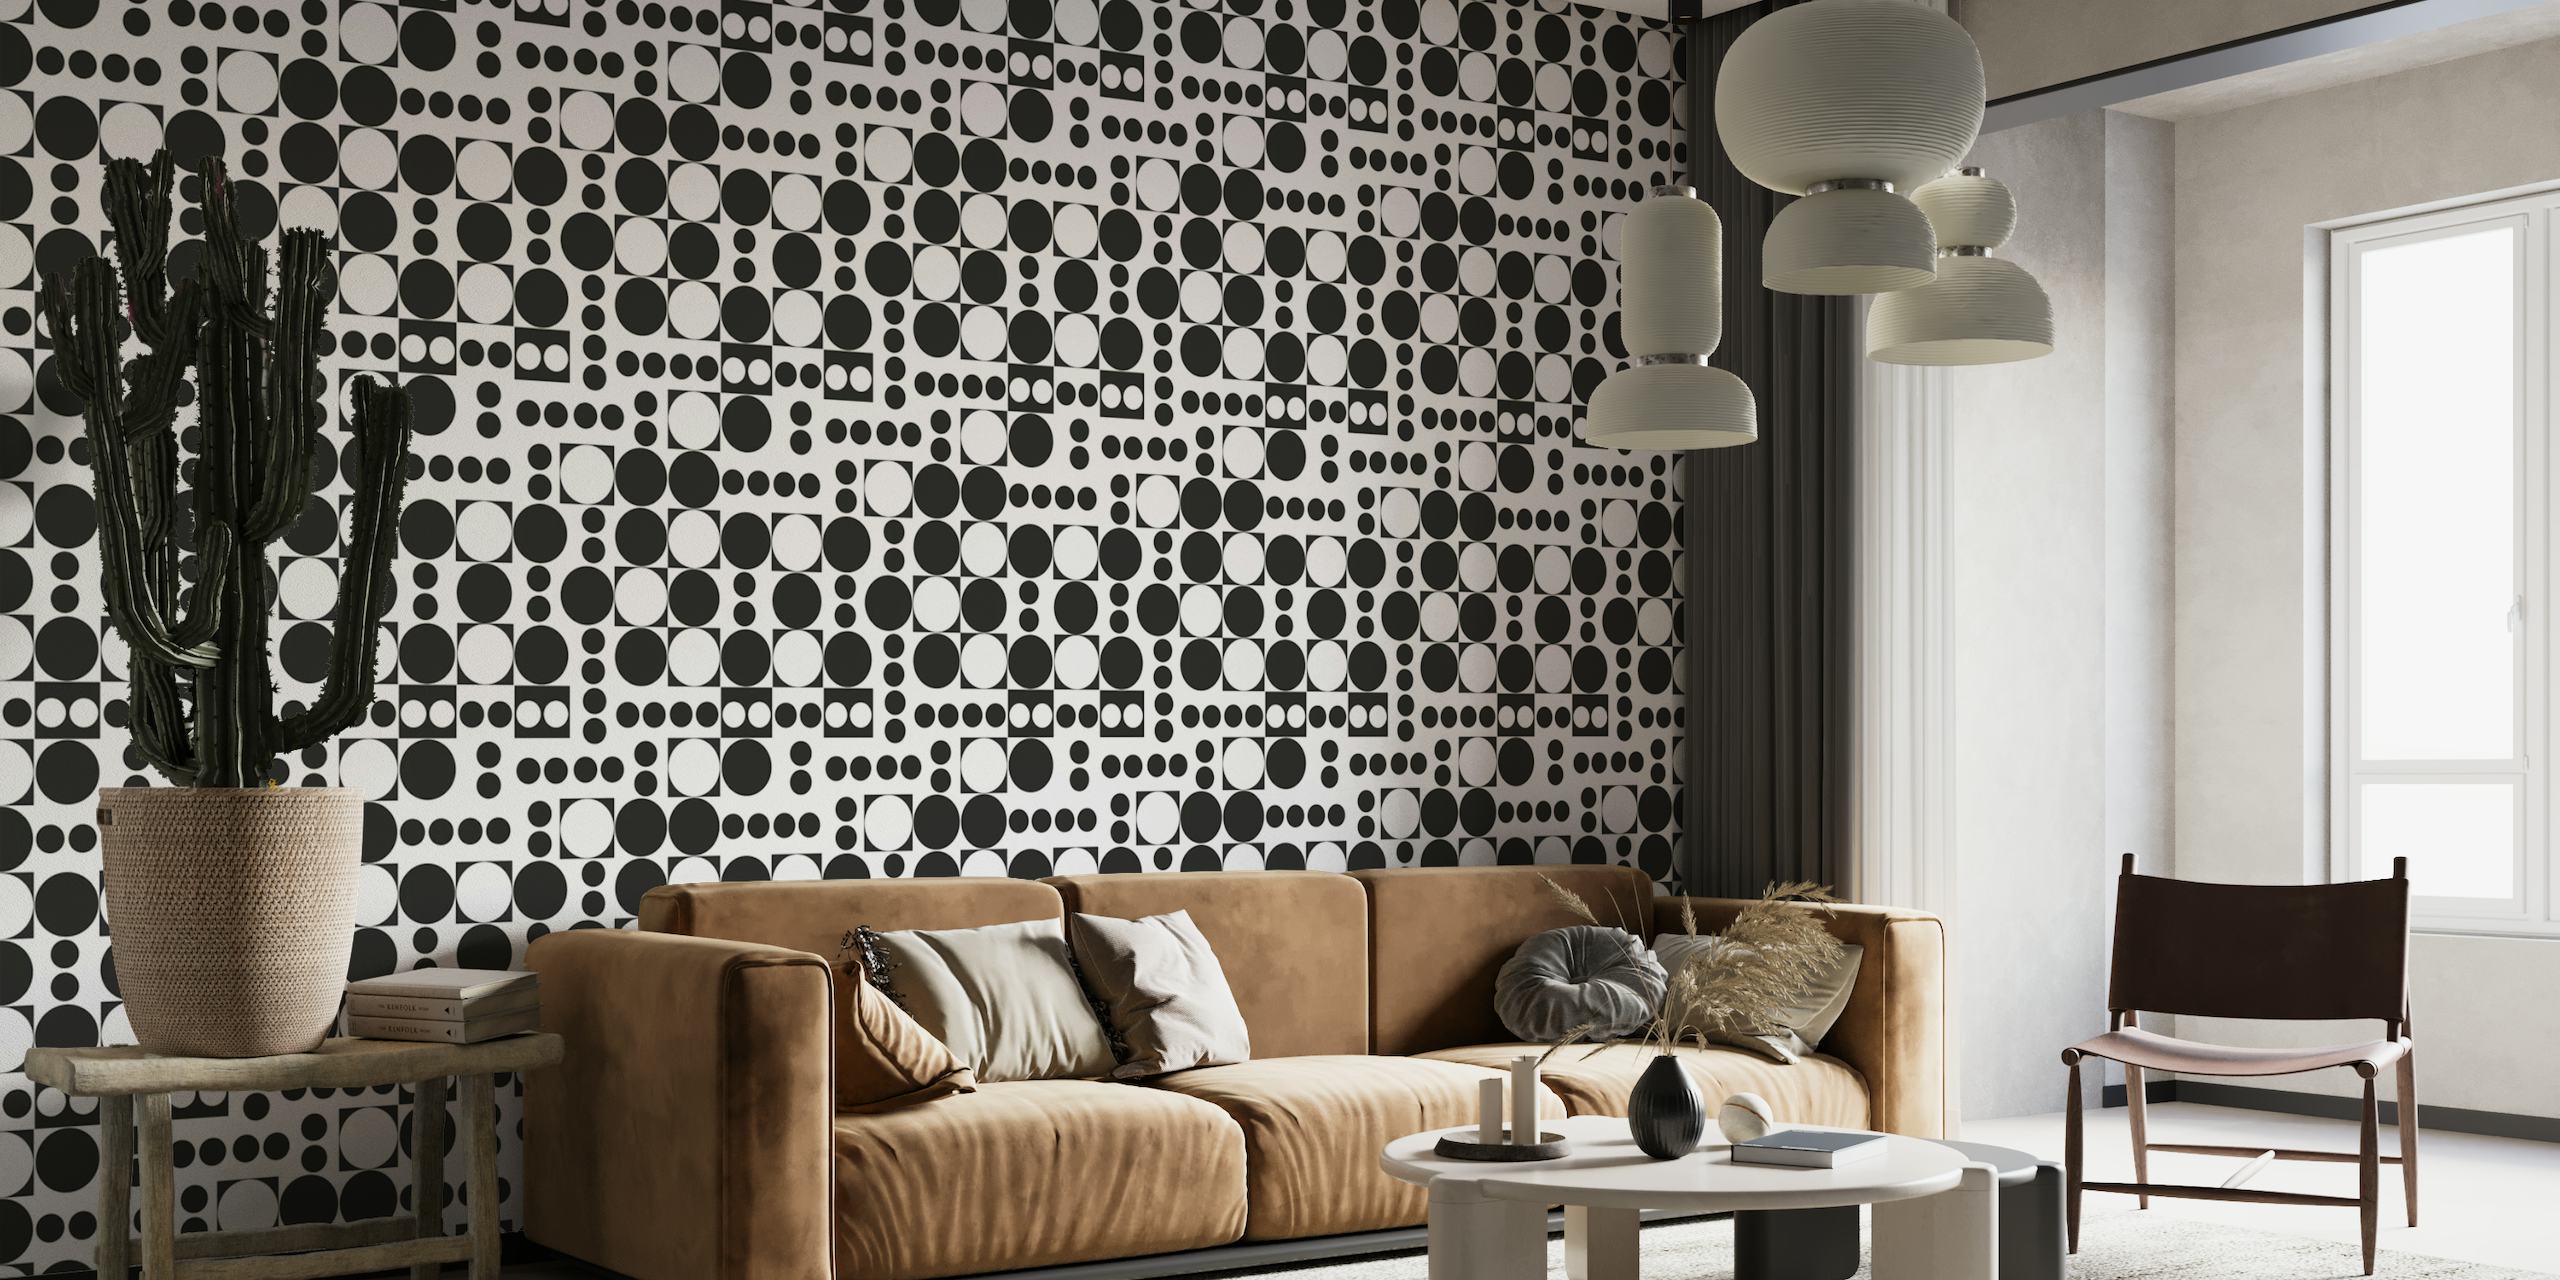 Exaggerated dots and circle wallpaper